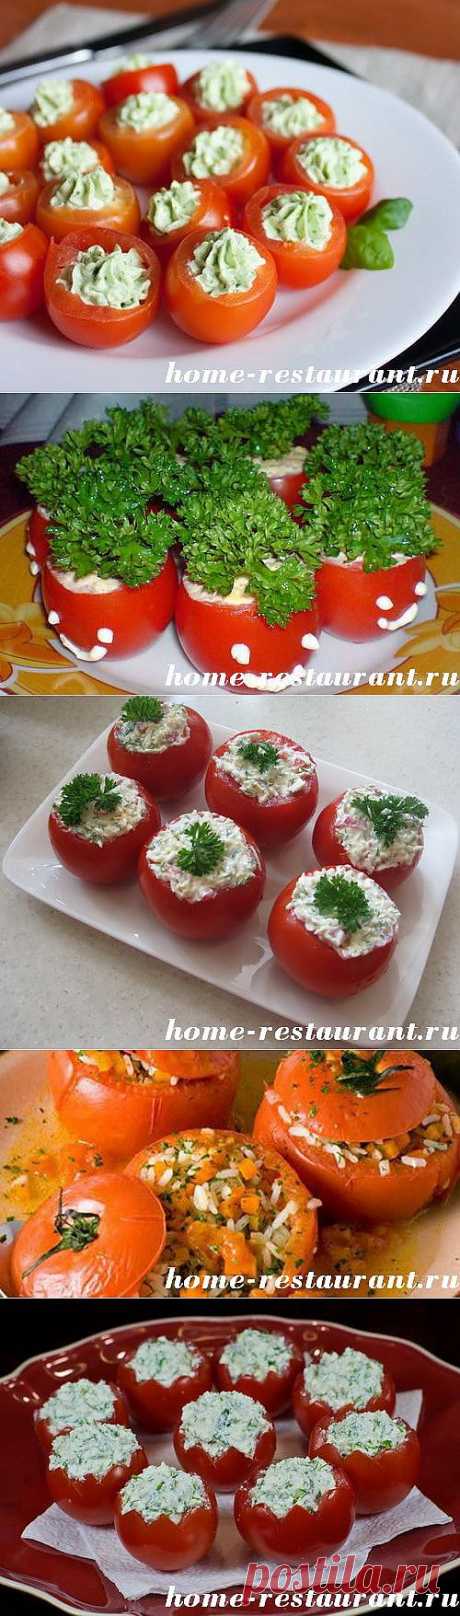 Фаршированные помидоры: лучшие рецепты с фото | Домашний Ресторан